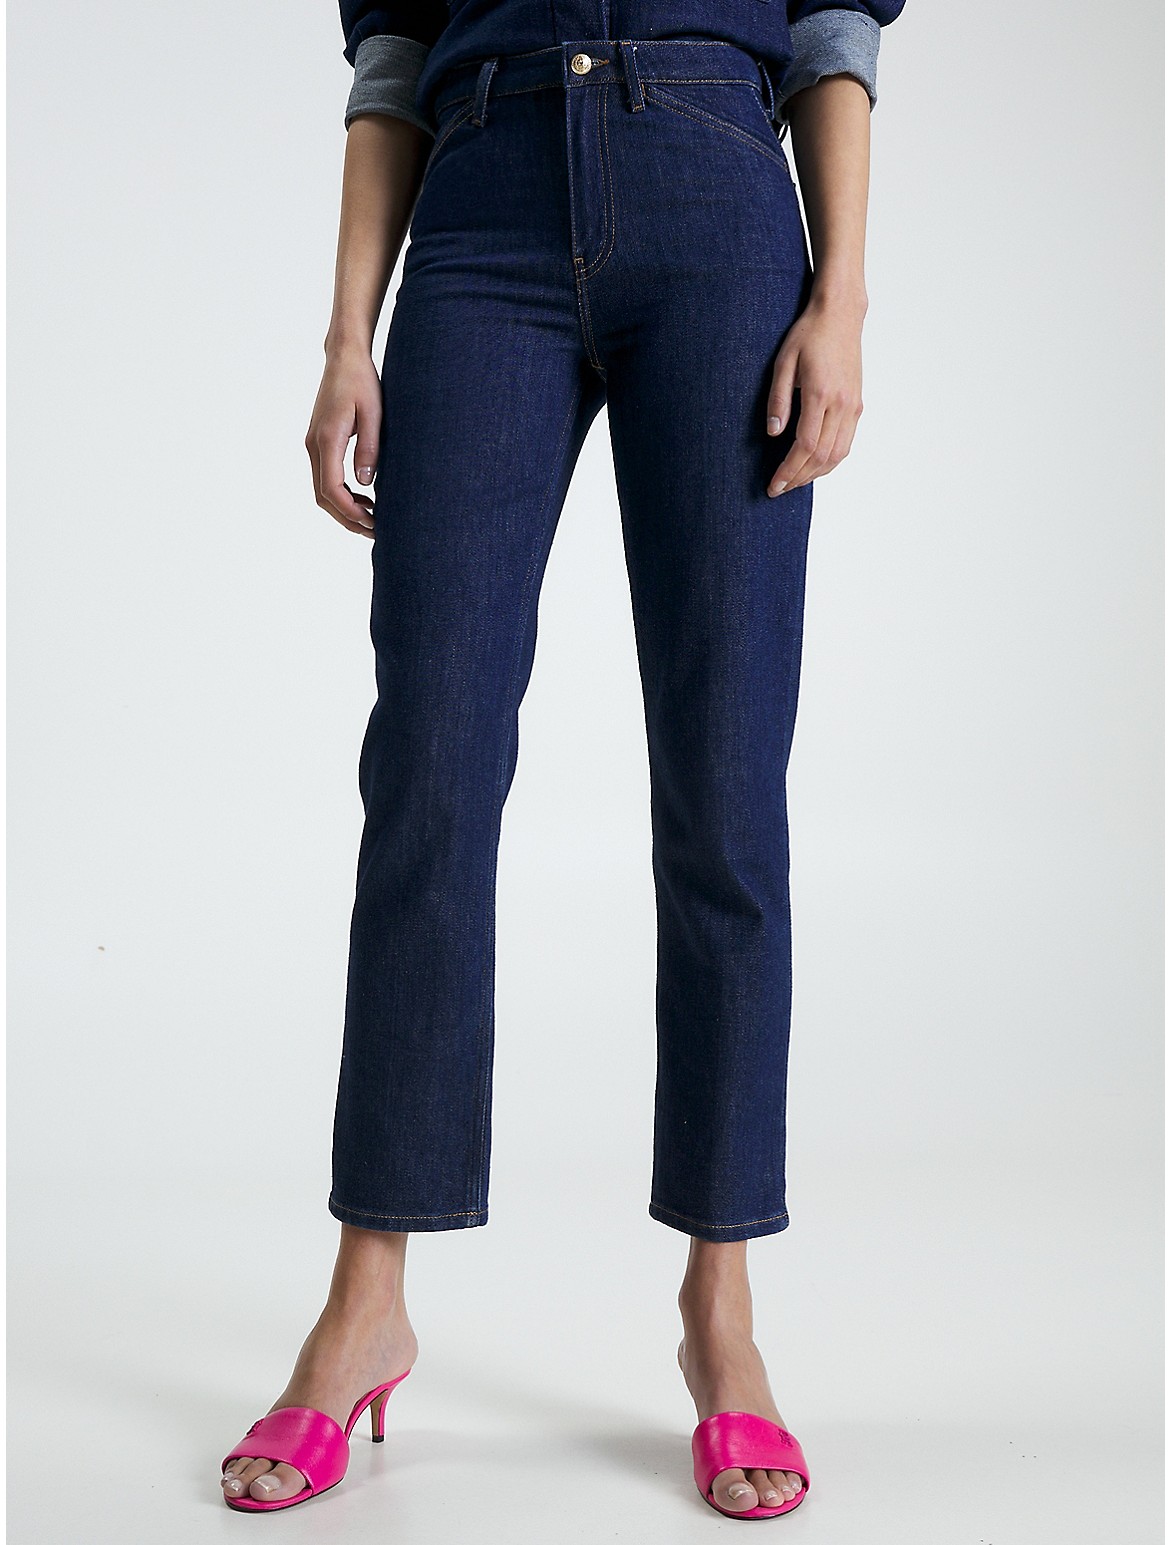 Tommy Hilfiger Women's High-Waist Straight Fit Jean - Blue - 30W x 32L